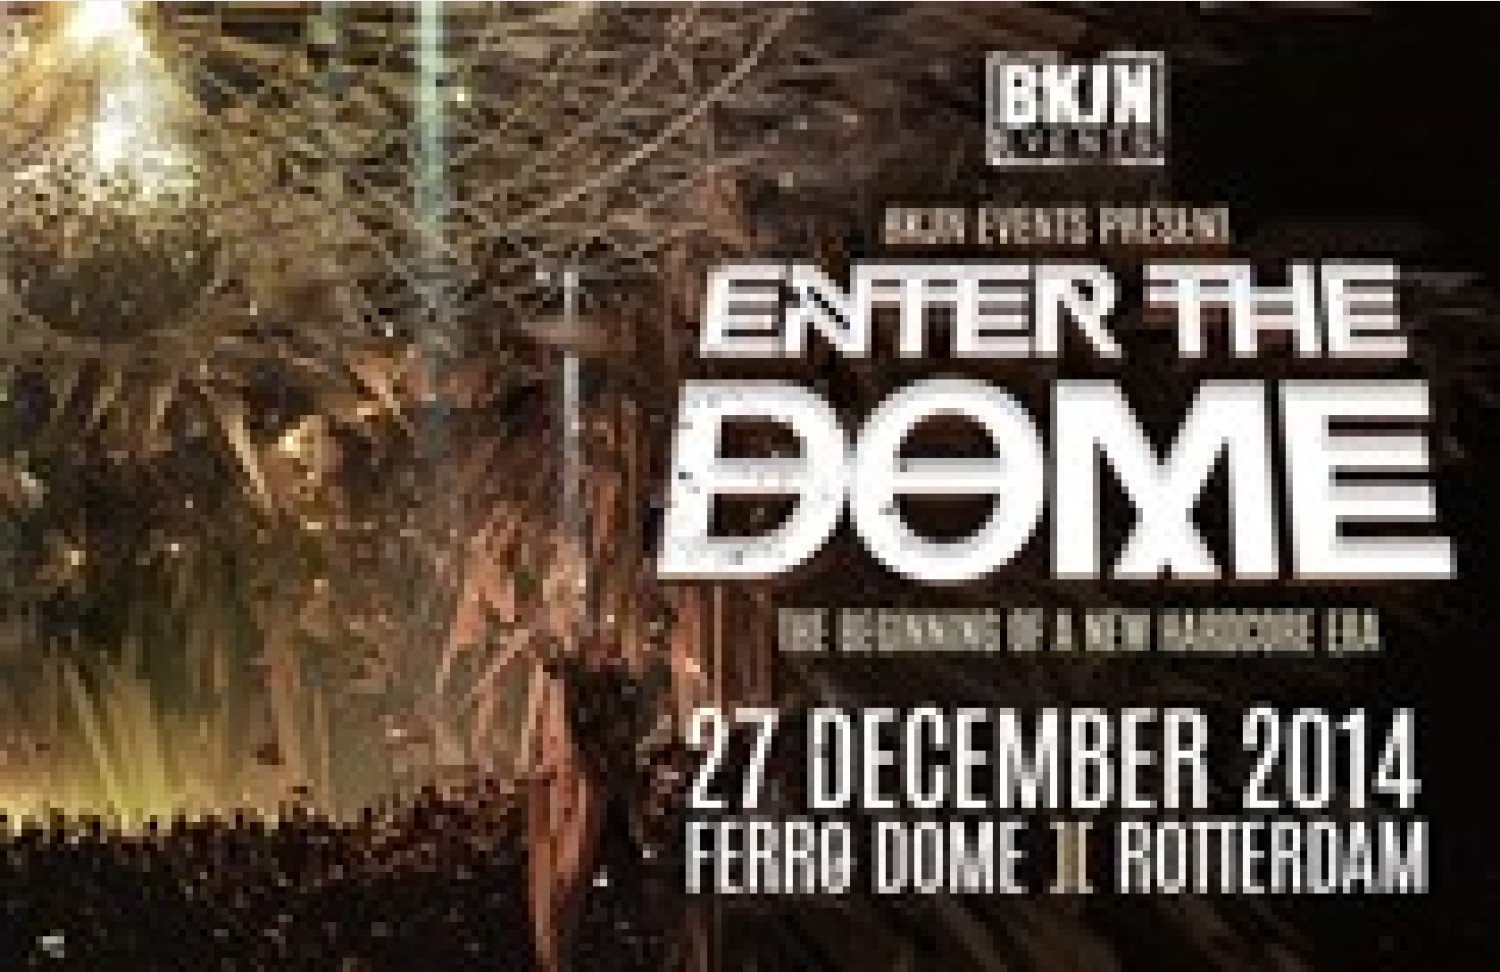 Party nieuws: BKJN trapt af in hagelnieuwe Ferro Dome